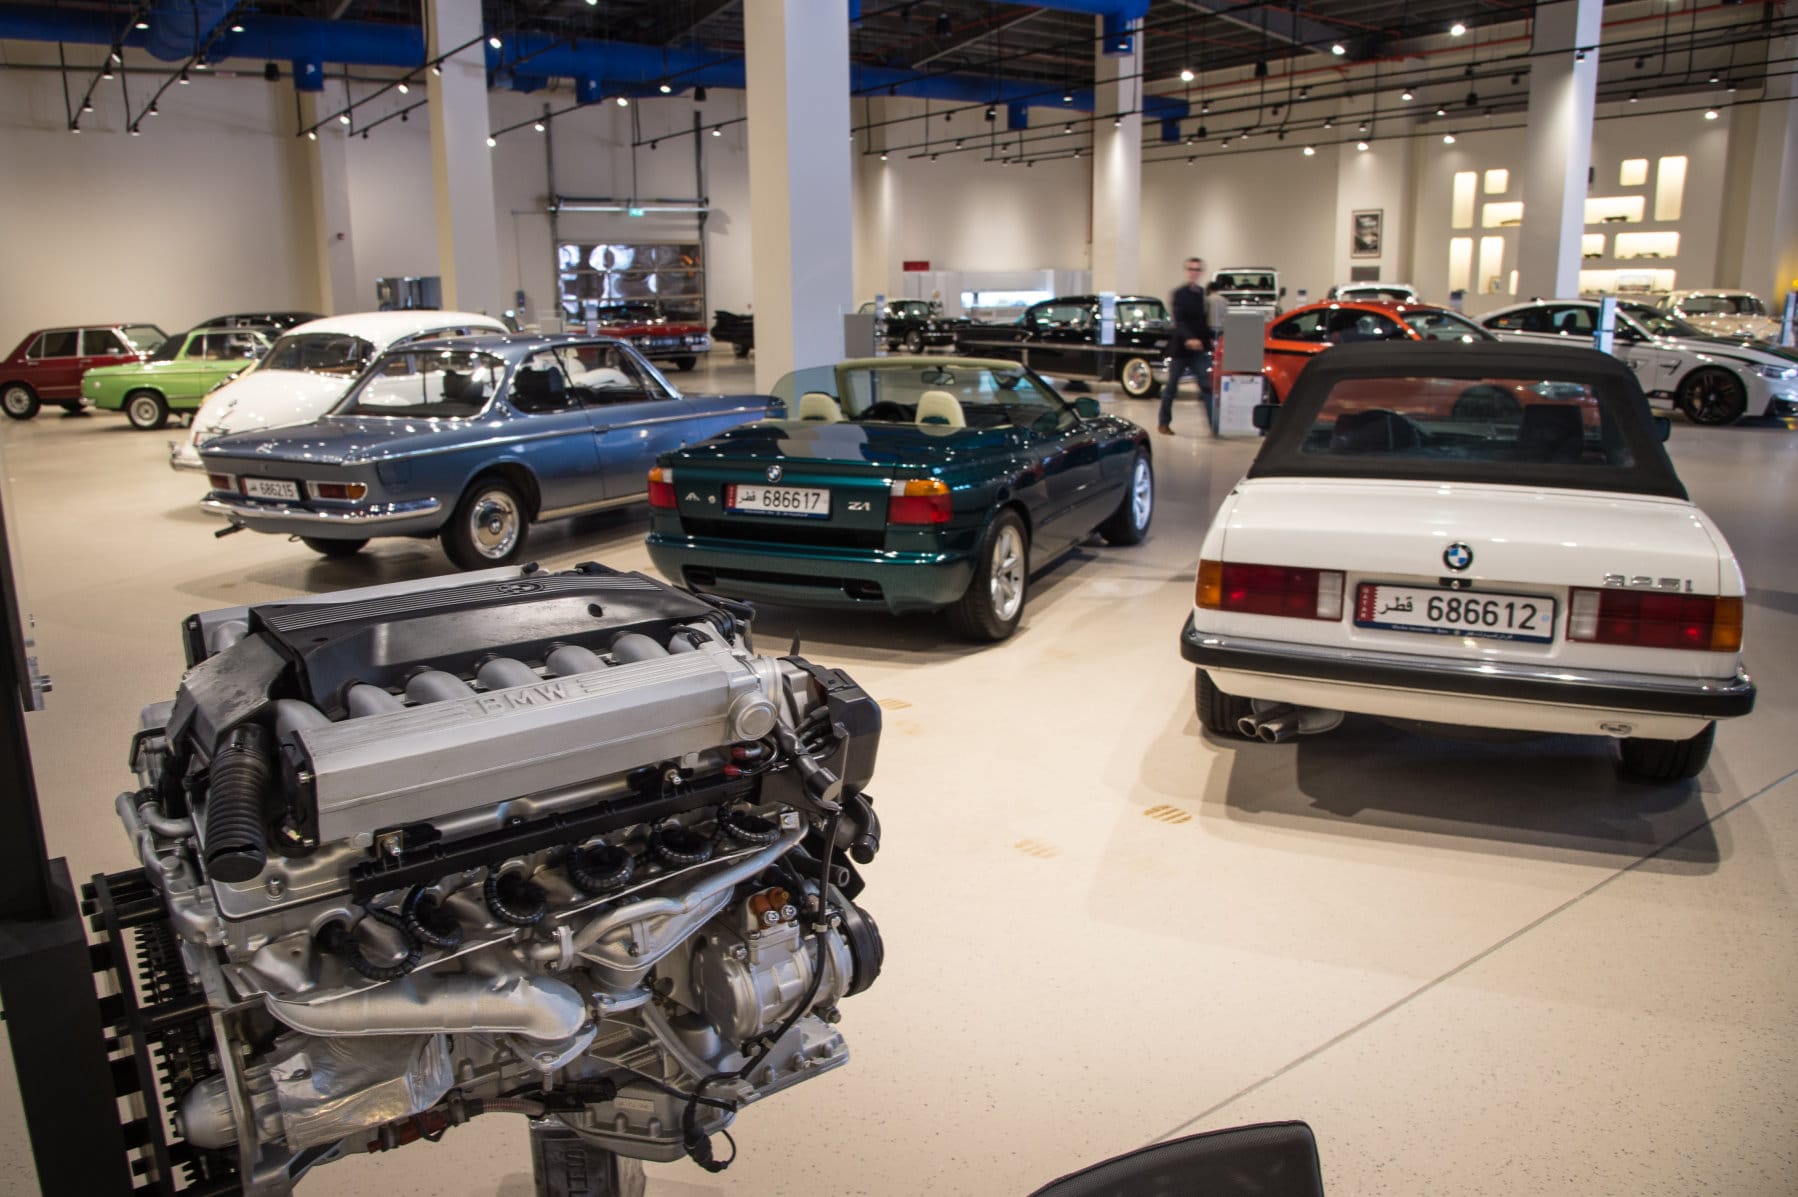 Omar Alfardan importiert auch Modelle von BMW ins Wüstenemirat. Da dürfen Autos aus Bayern auch in seiner Sammlung nicht fehlen. Mit dabei ist ein grüner BMW Z1. Roadster dieses Typs wurden zwischen 1989 und 1991 gebaut.